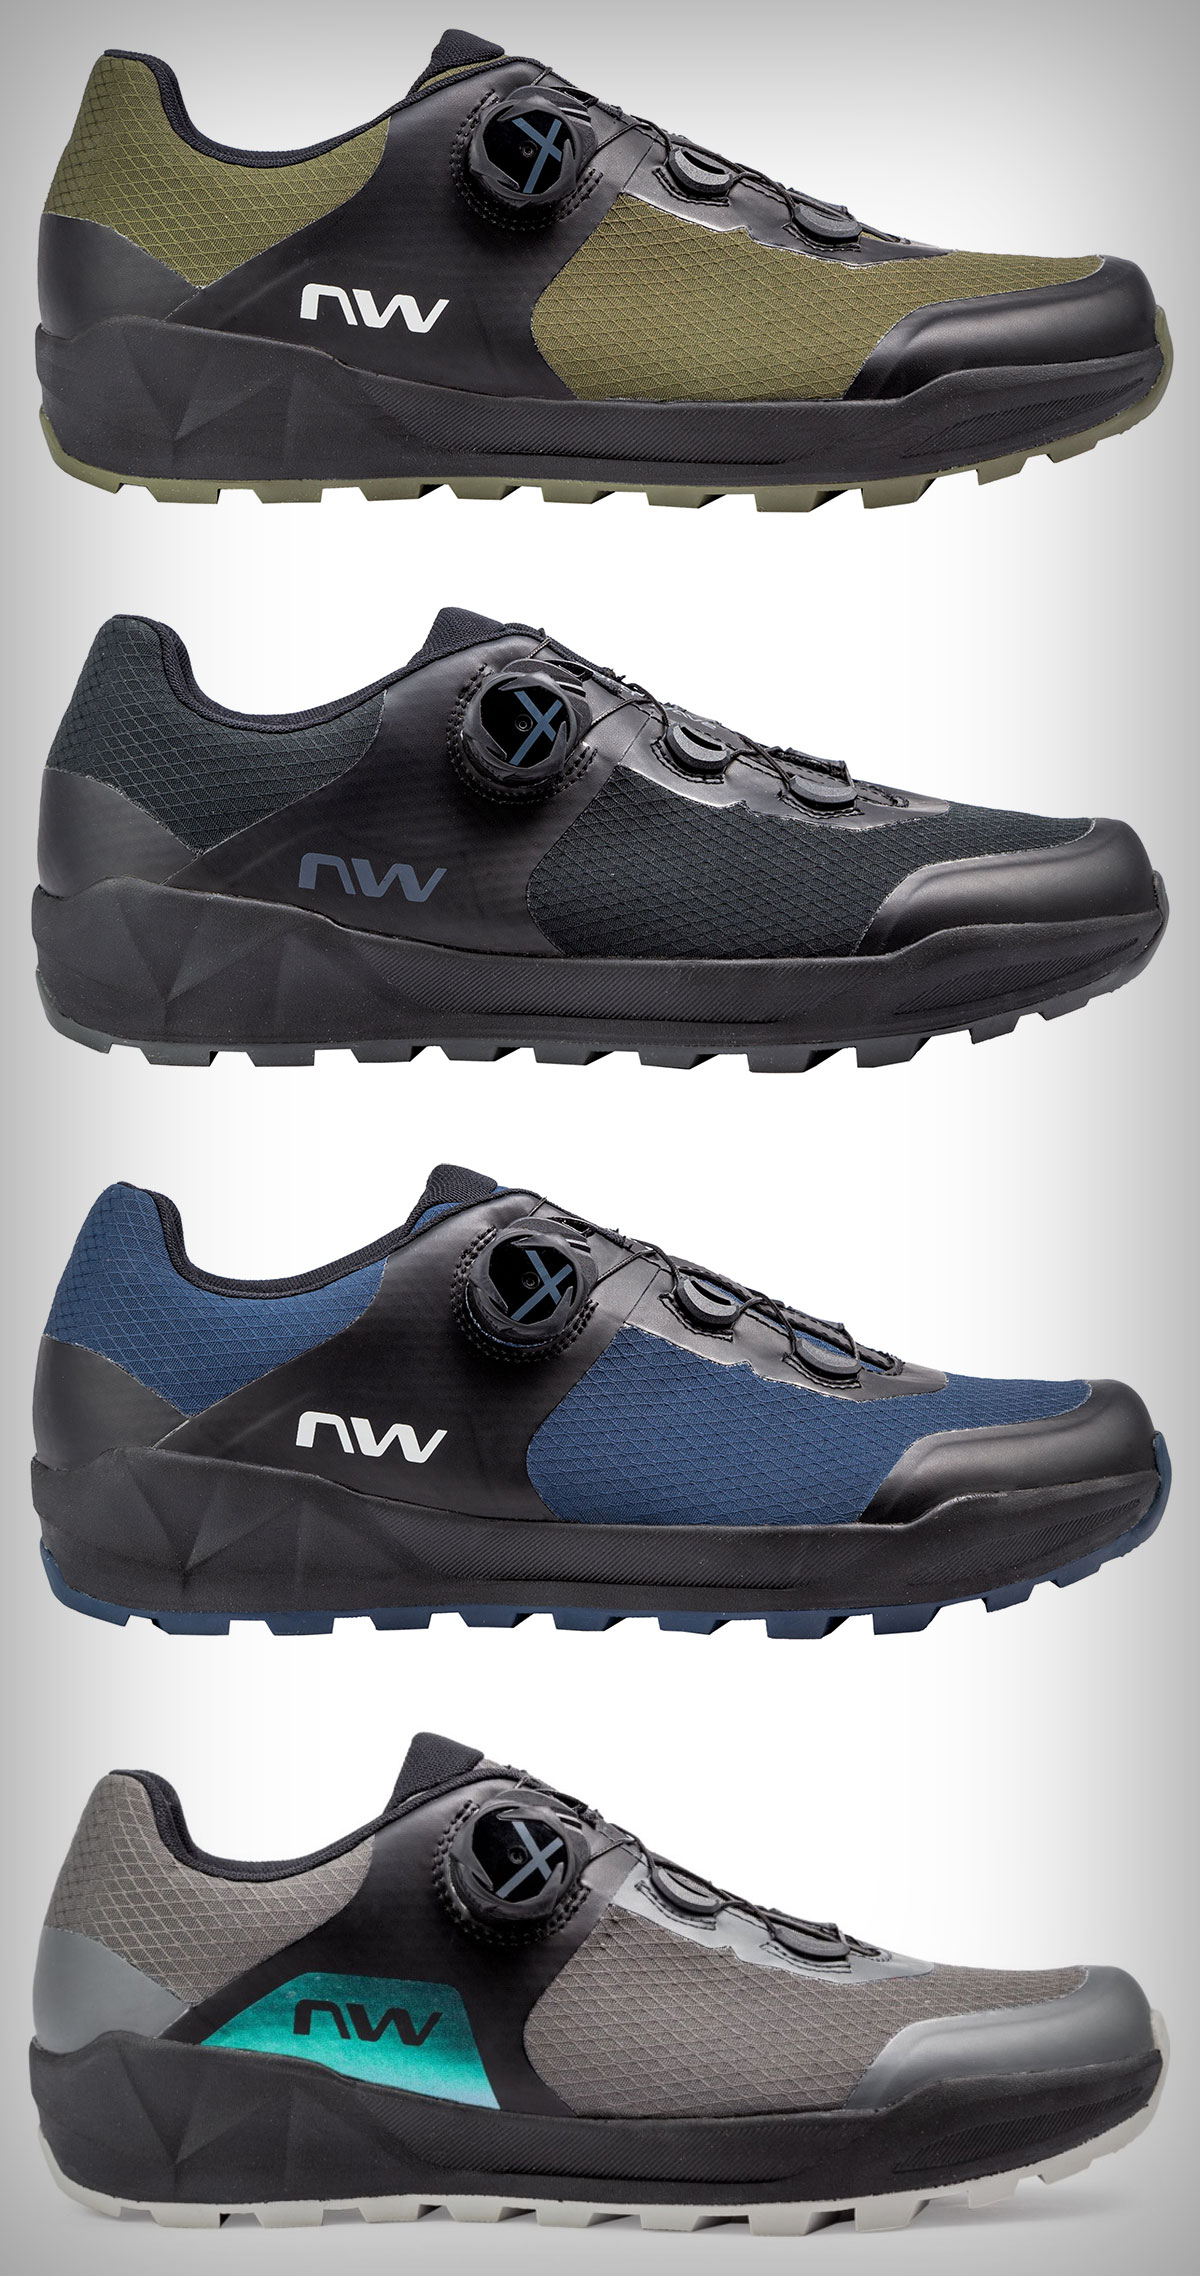 Northwave presenta las Corsair 2, sus nuevas zapatillas para amantes de las rutas All Mountain y usuarios de e-MTB